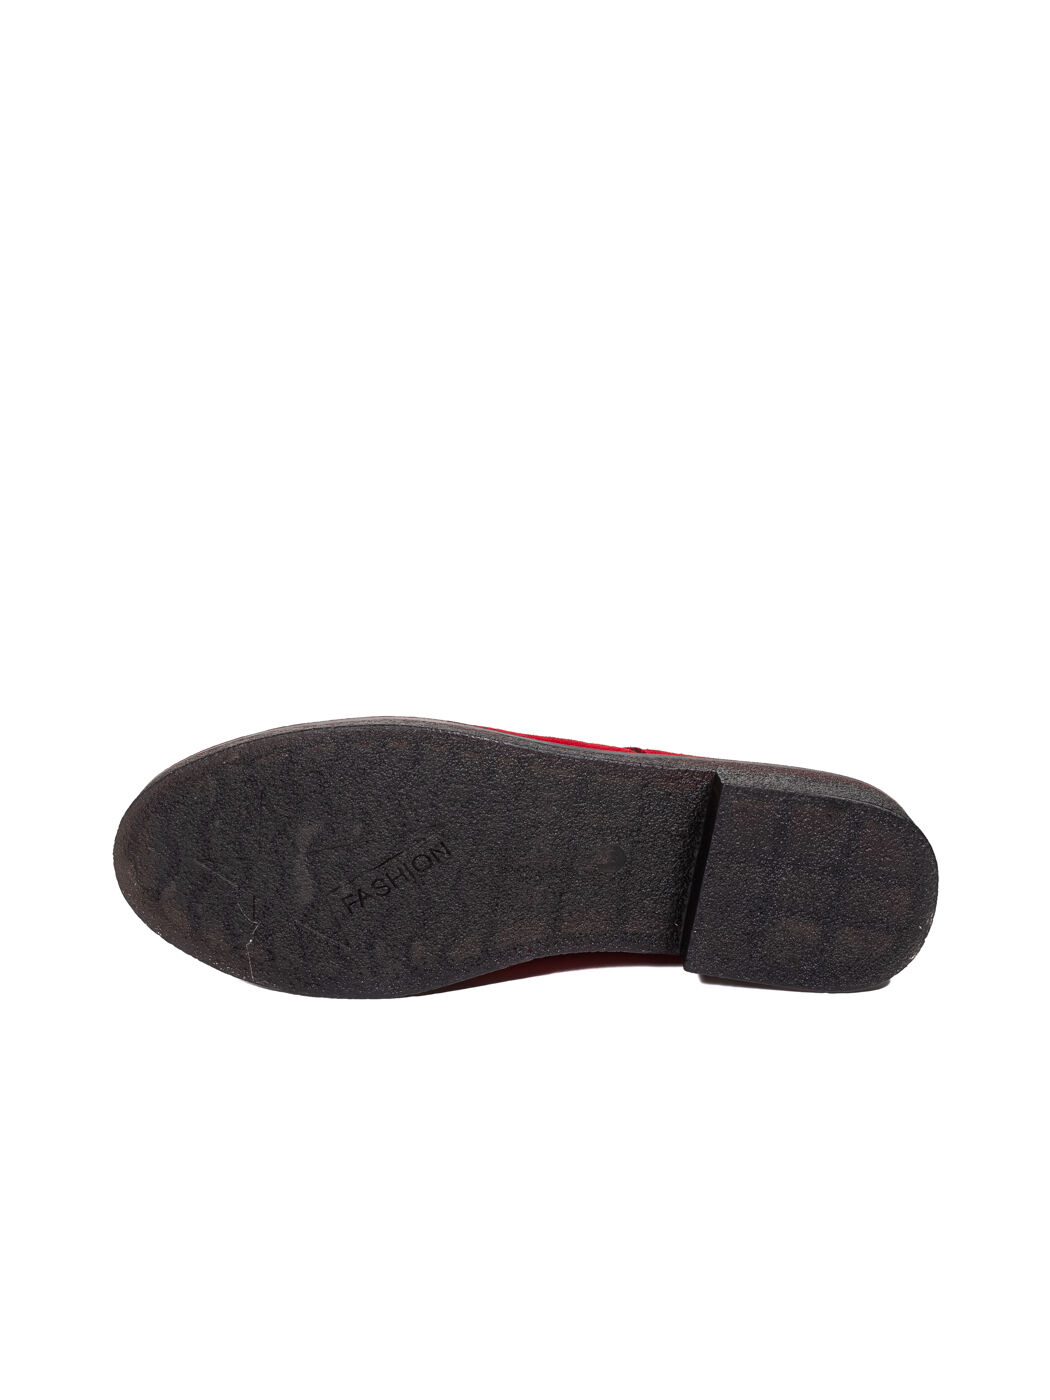 Туфли Oxfords женские красные экозамша каблук устойчивый демисезон 10M вид 1